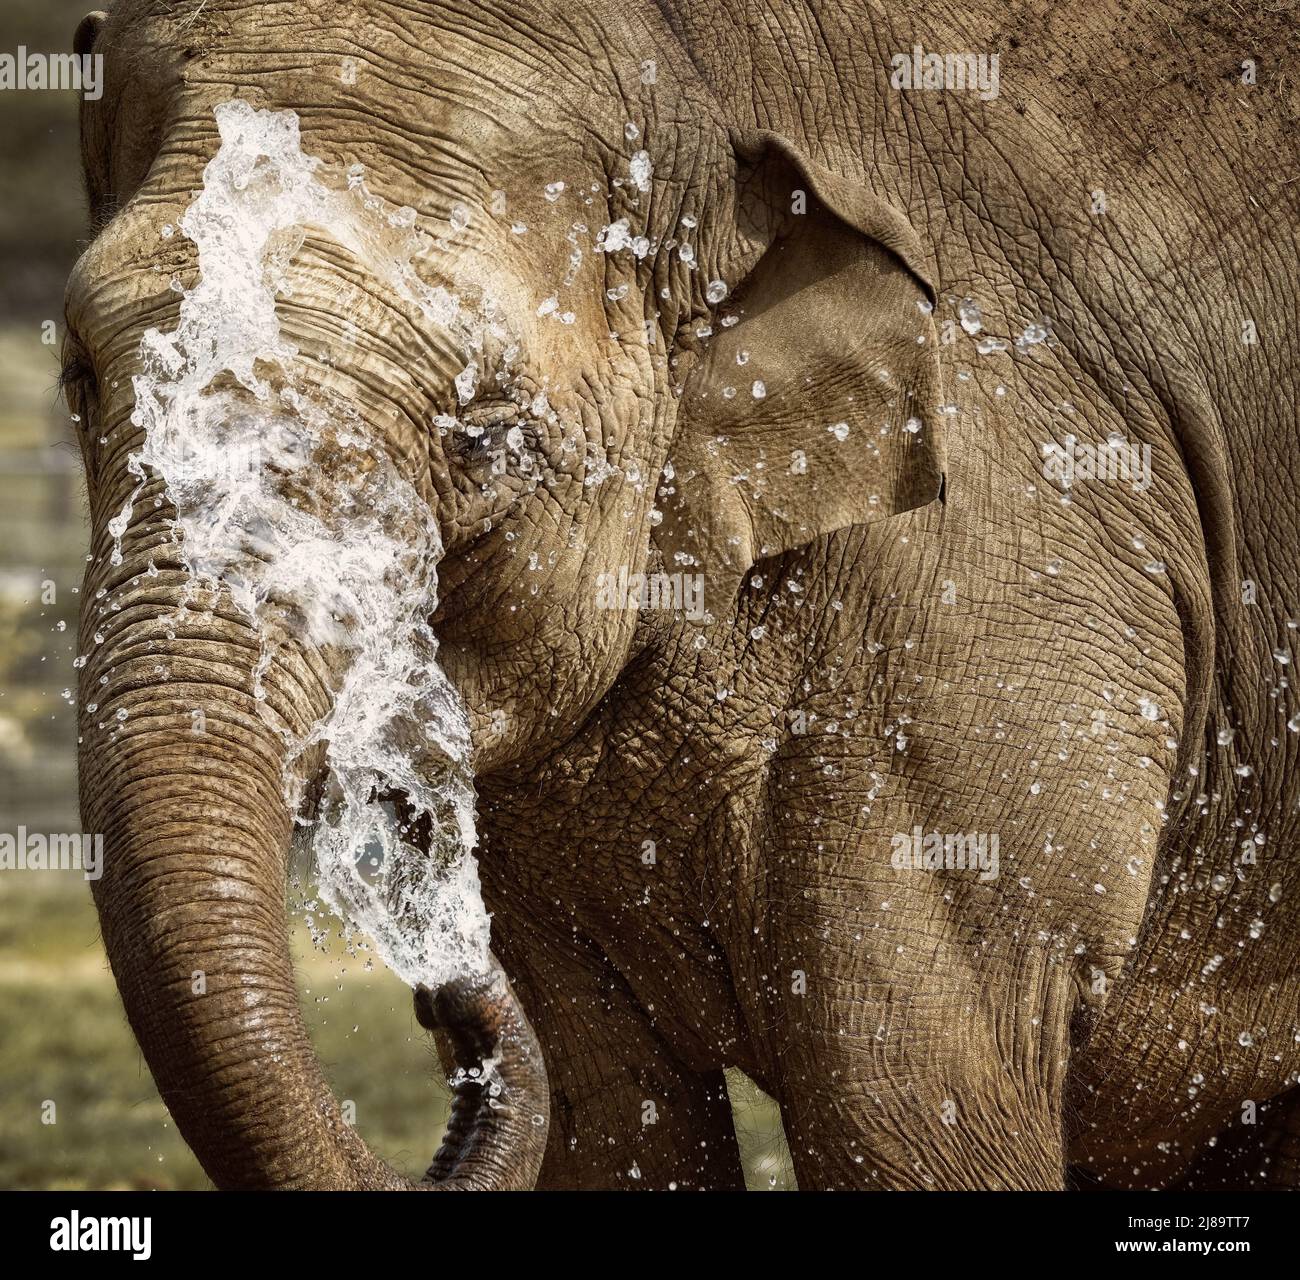 Eine weibliche indische Elefant sprüht Wasser über ihr Gesicht und ihren Körper, um bei der warmen Sonne kühl zu bleiben. Stockfoto